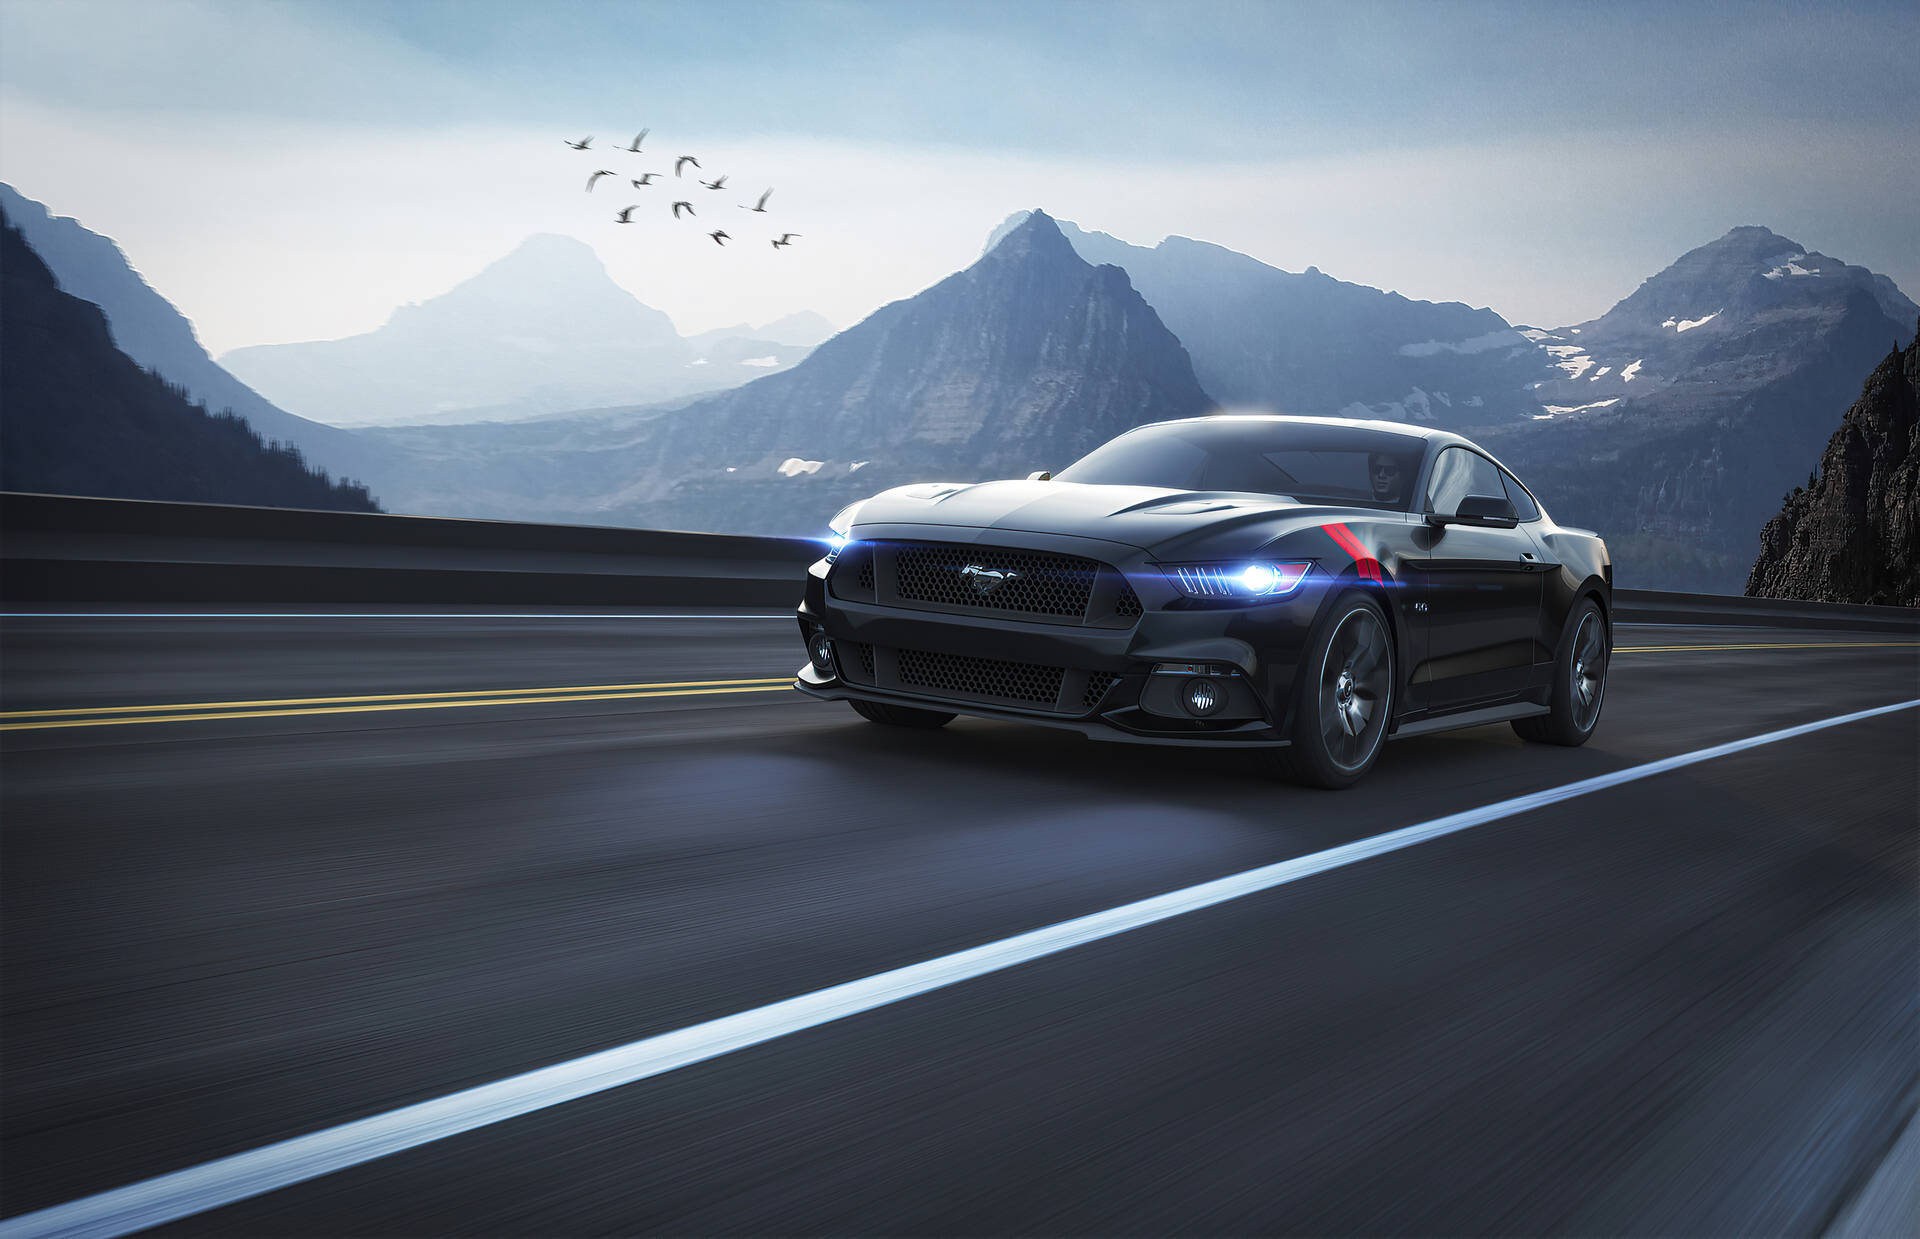 Ford Mustang GT kører ned ad vejen. Wallpaper